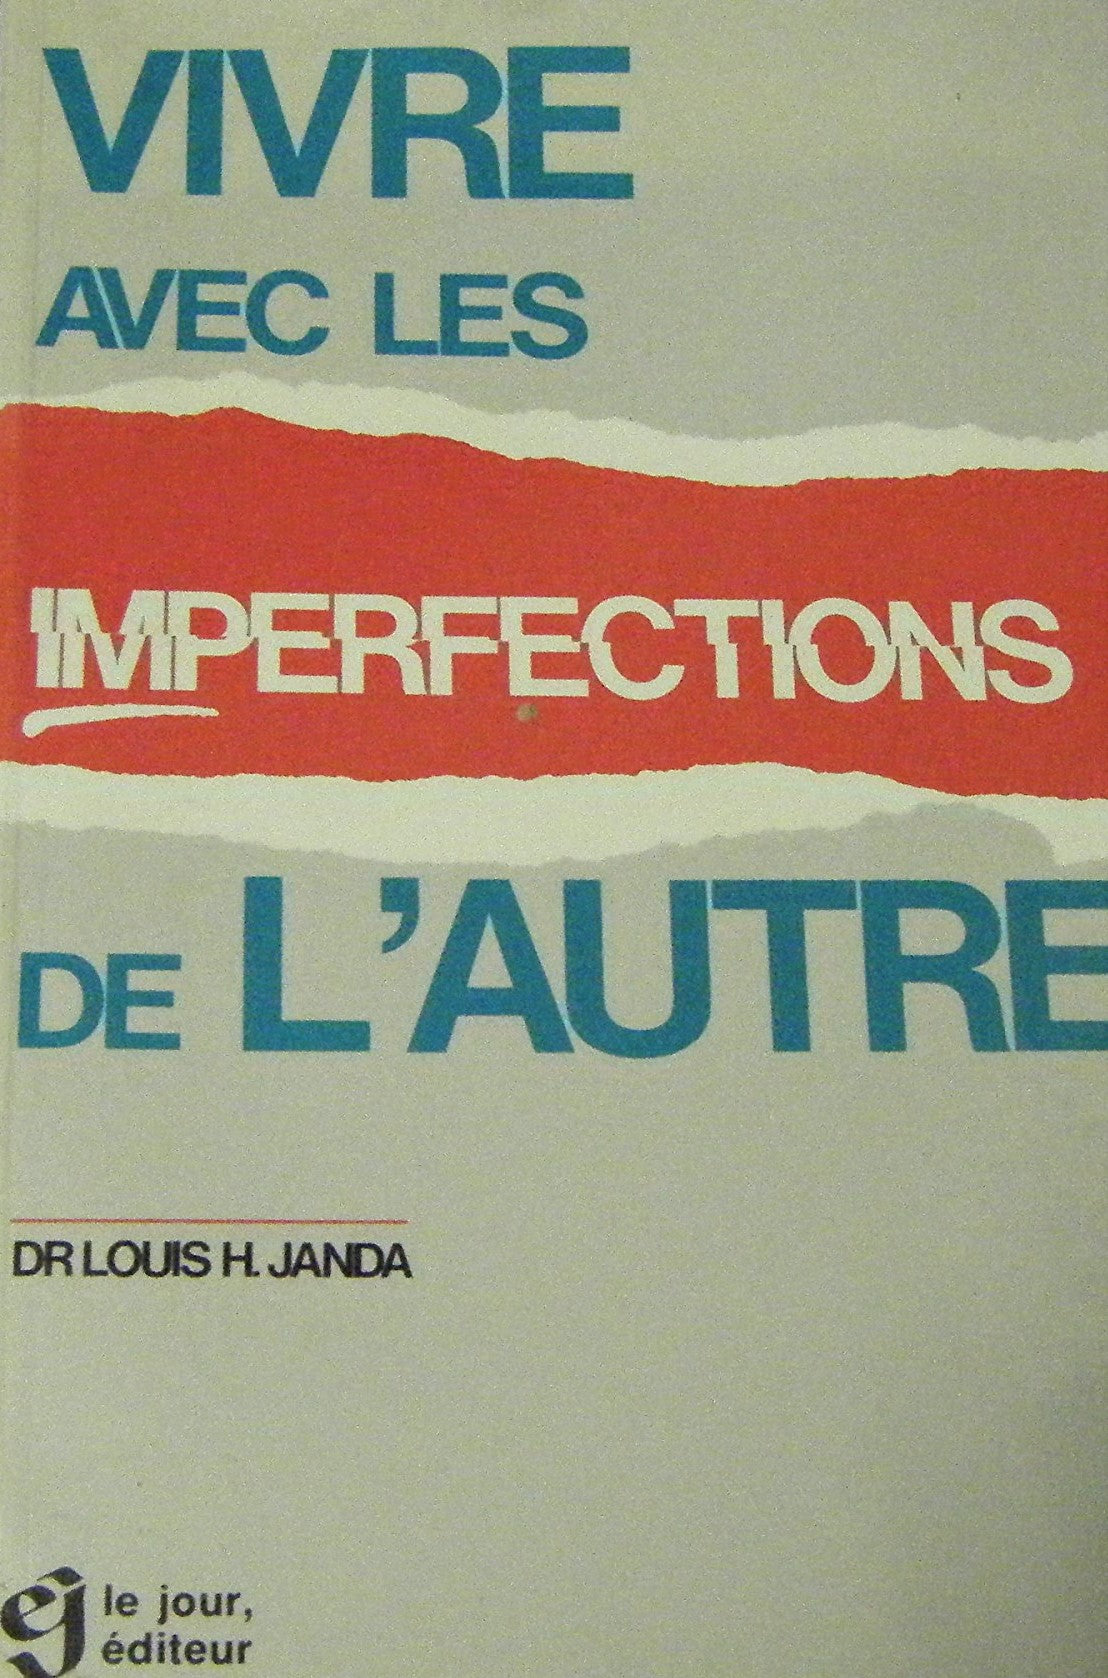 Vivre avec les imperfections de l'autre - Dr Louis H. Janda